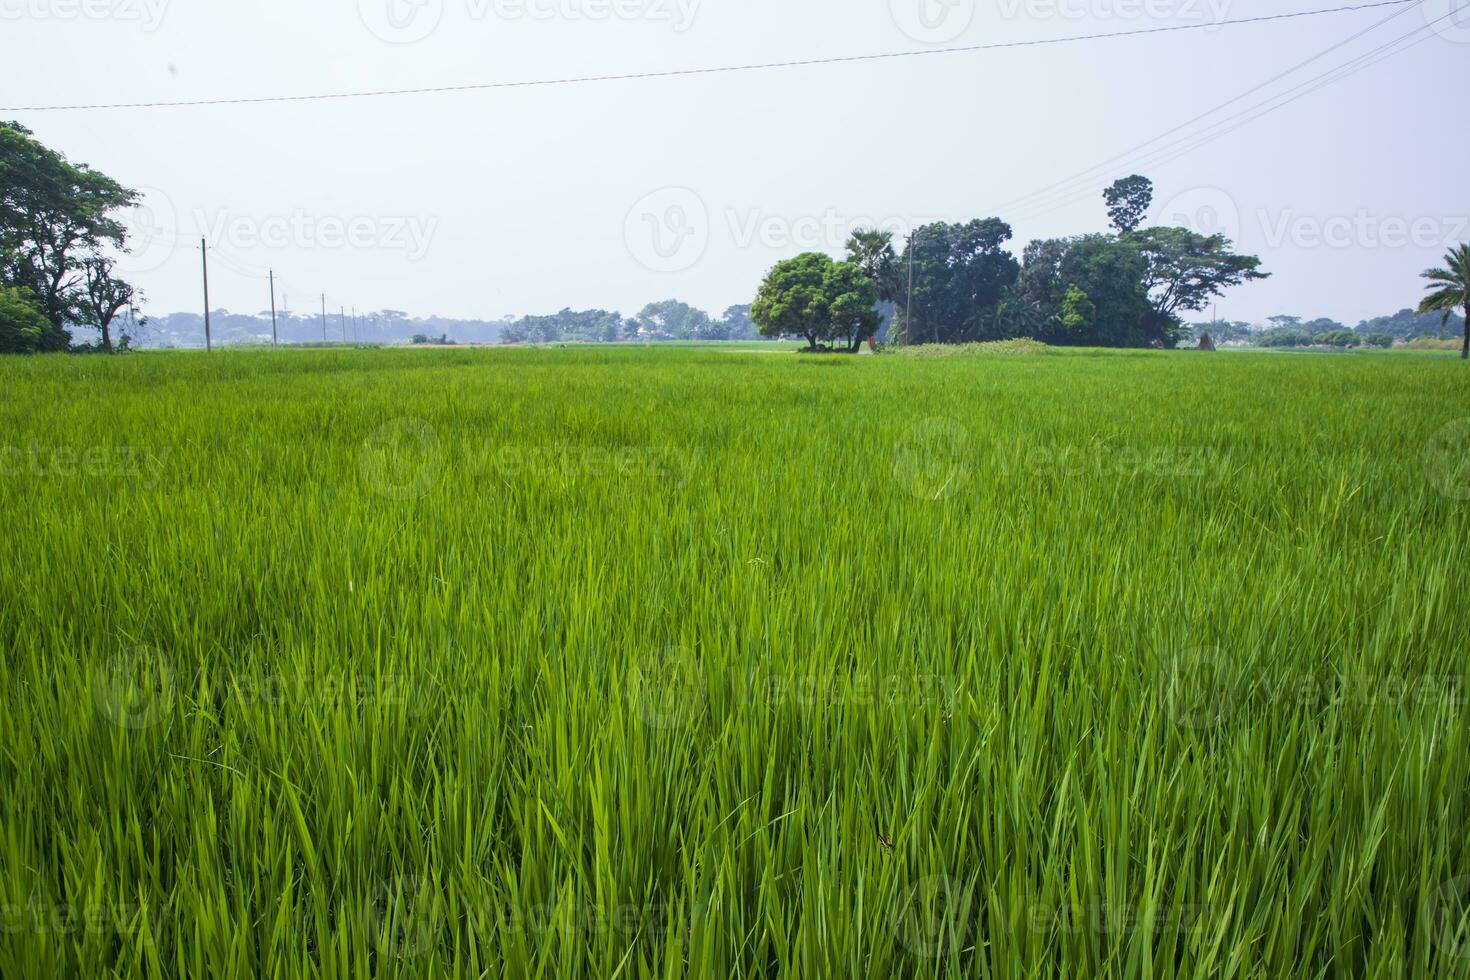 landbouw landschap visie van de graan rijst- veld- in de platteland van Bangladesh foto